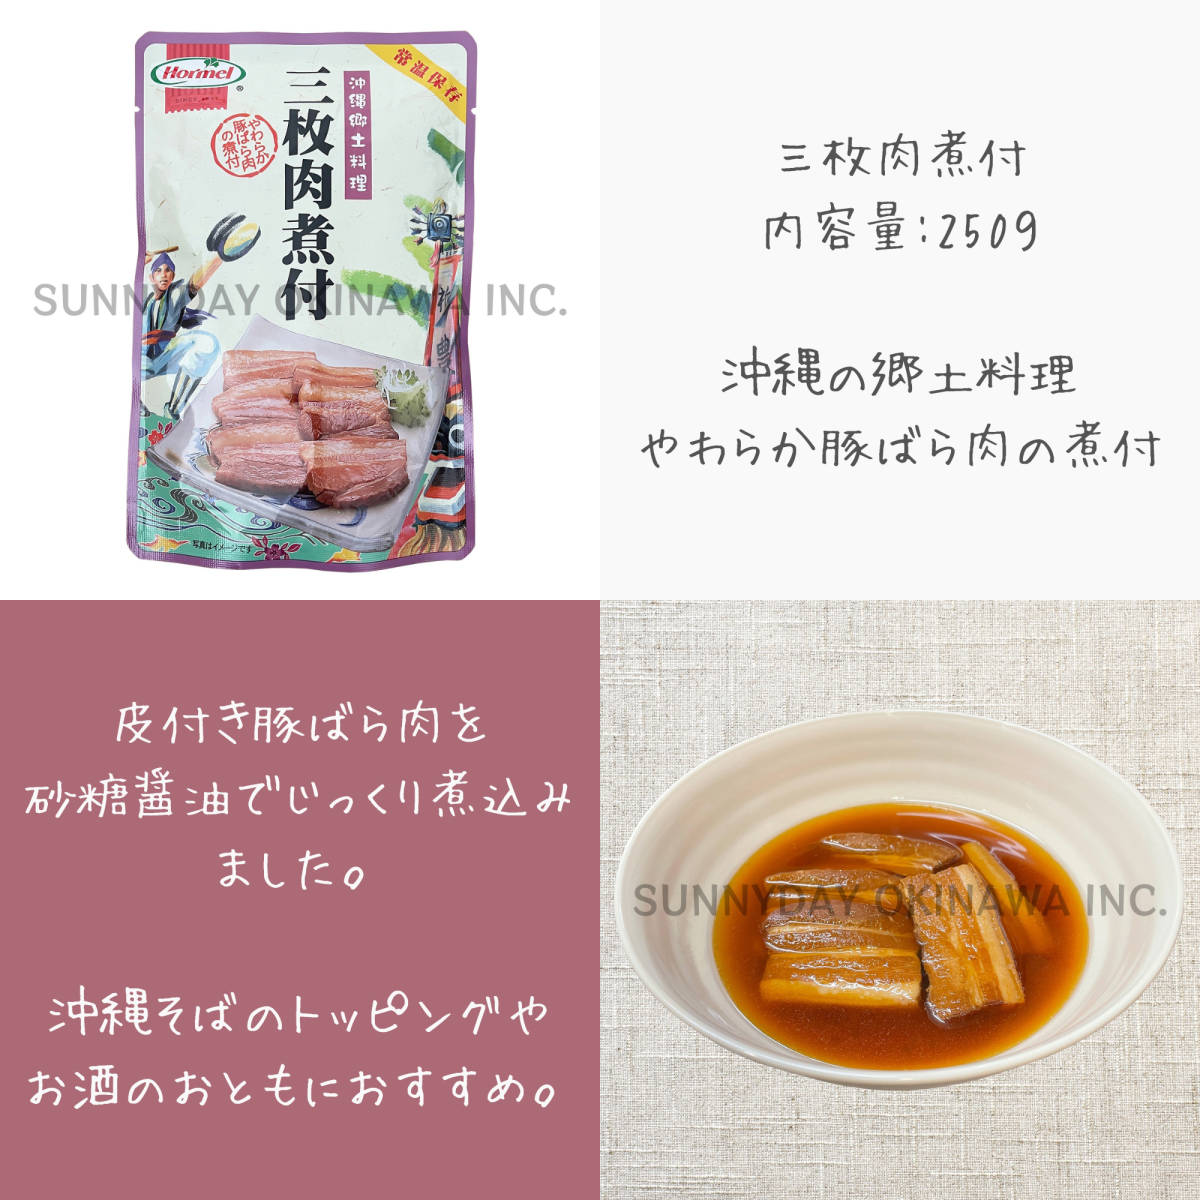  три листов мясо . есть ..so-ki. . есть 6 пакет комплект Okinawa сигнал meru рагу рафуте свинья рагу из мяса или рыбы в кубиках so-ki фарфоровая пиала со-ки соба Okinawa соба . земля производство ваш заказ 